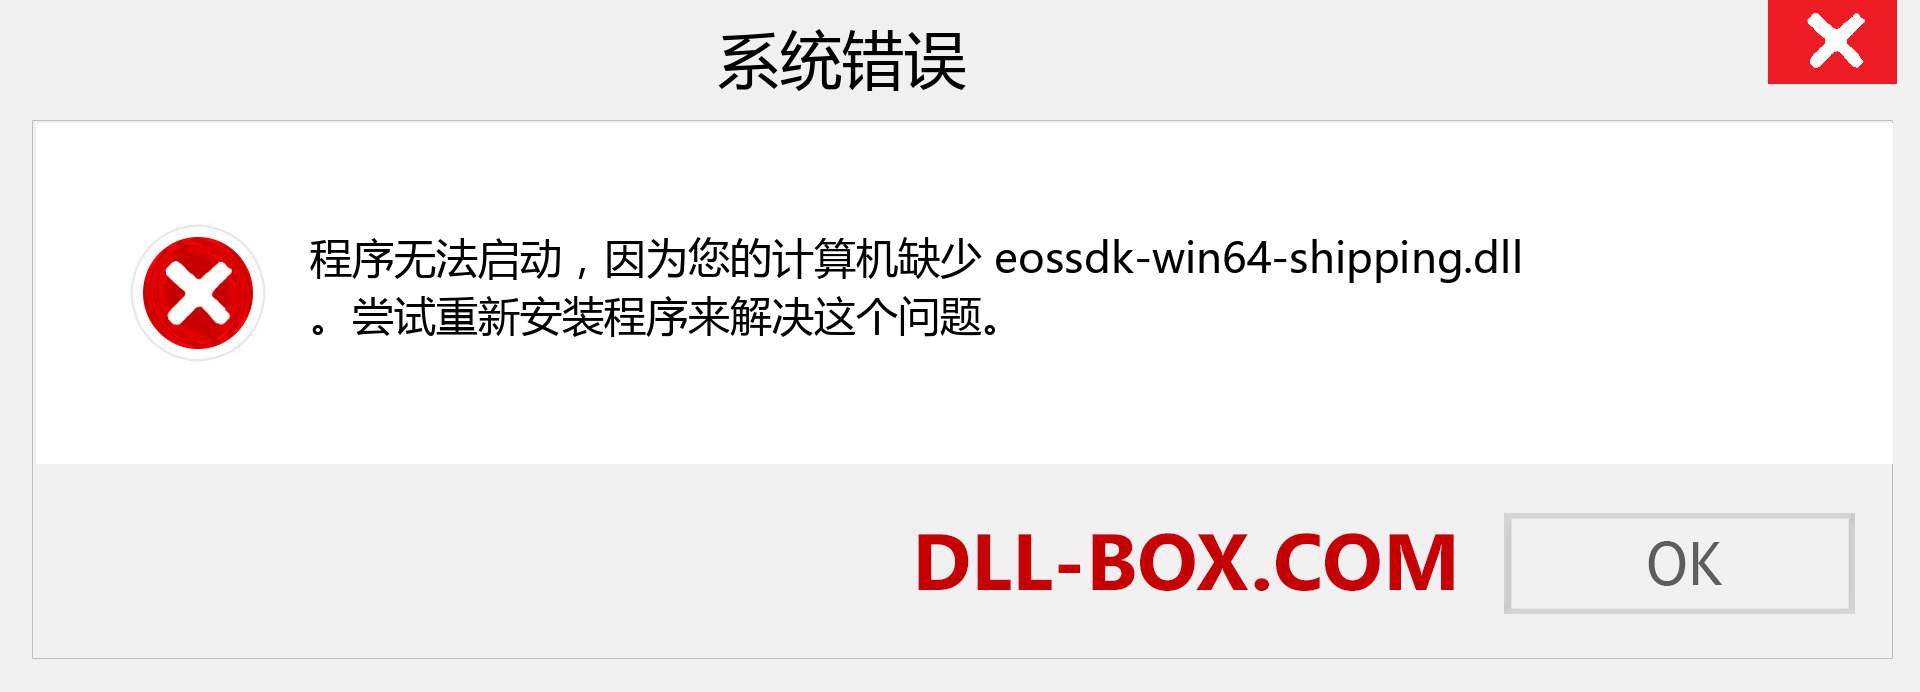 eossdk-win64-shipping.dll 文件丢失？。 适用于 Windows 7、8、10 的下载 - 修复 Windows、照片、图像上的 eossdk-win64-shipping dll 丢失错误